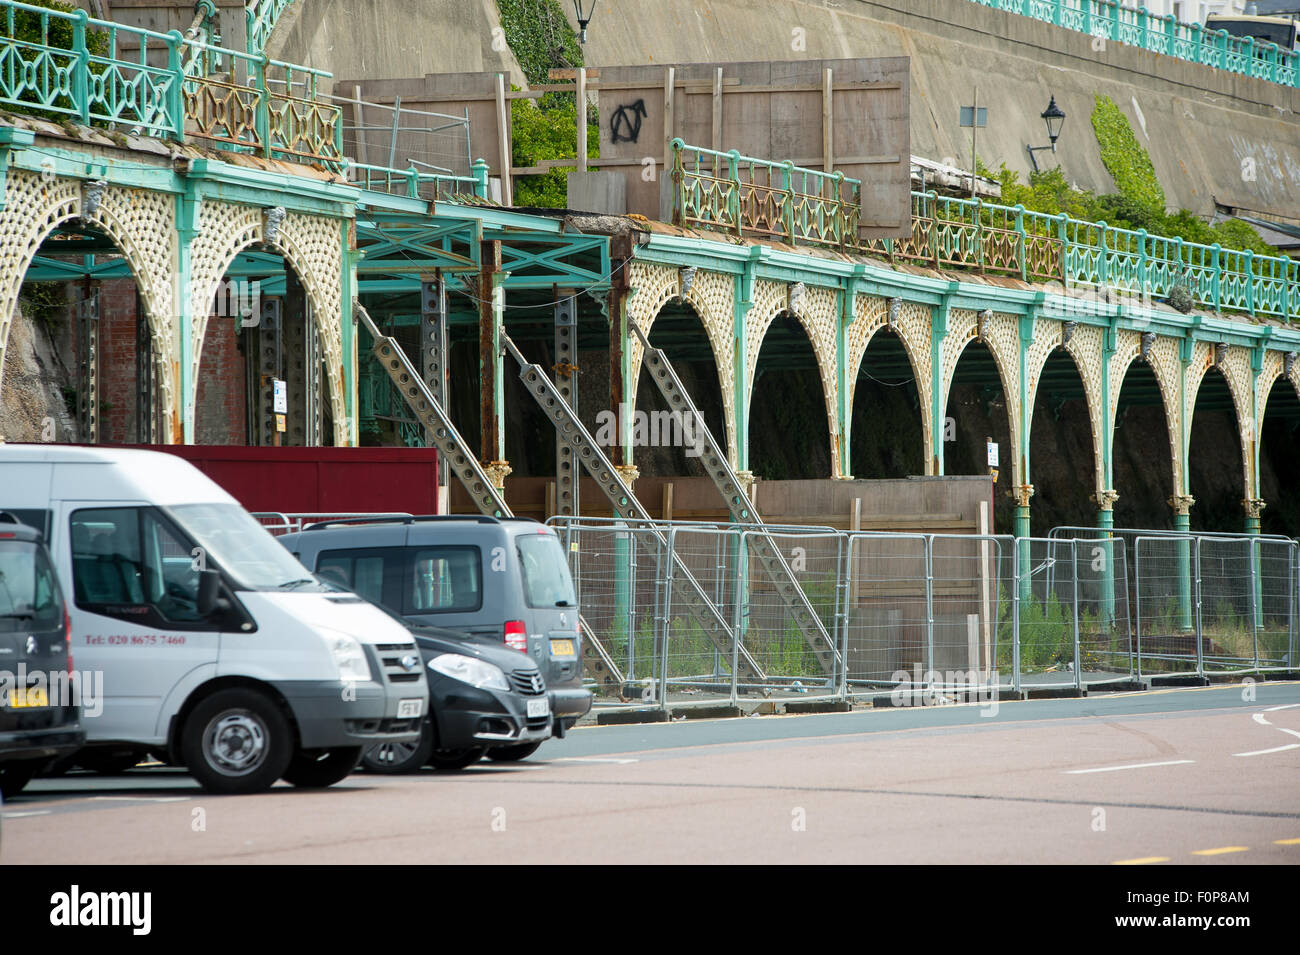 Coulisses de l'historique route de Madère à Brighton. Les célèbres arcades bas sur le front de route ont commencé à s'effondrer. Banque D'Images